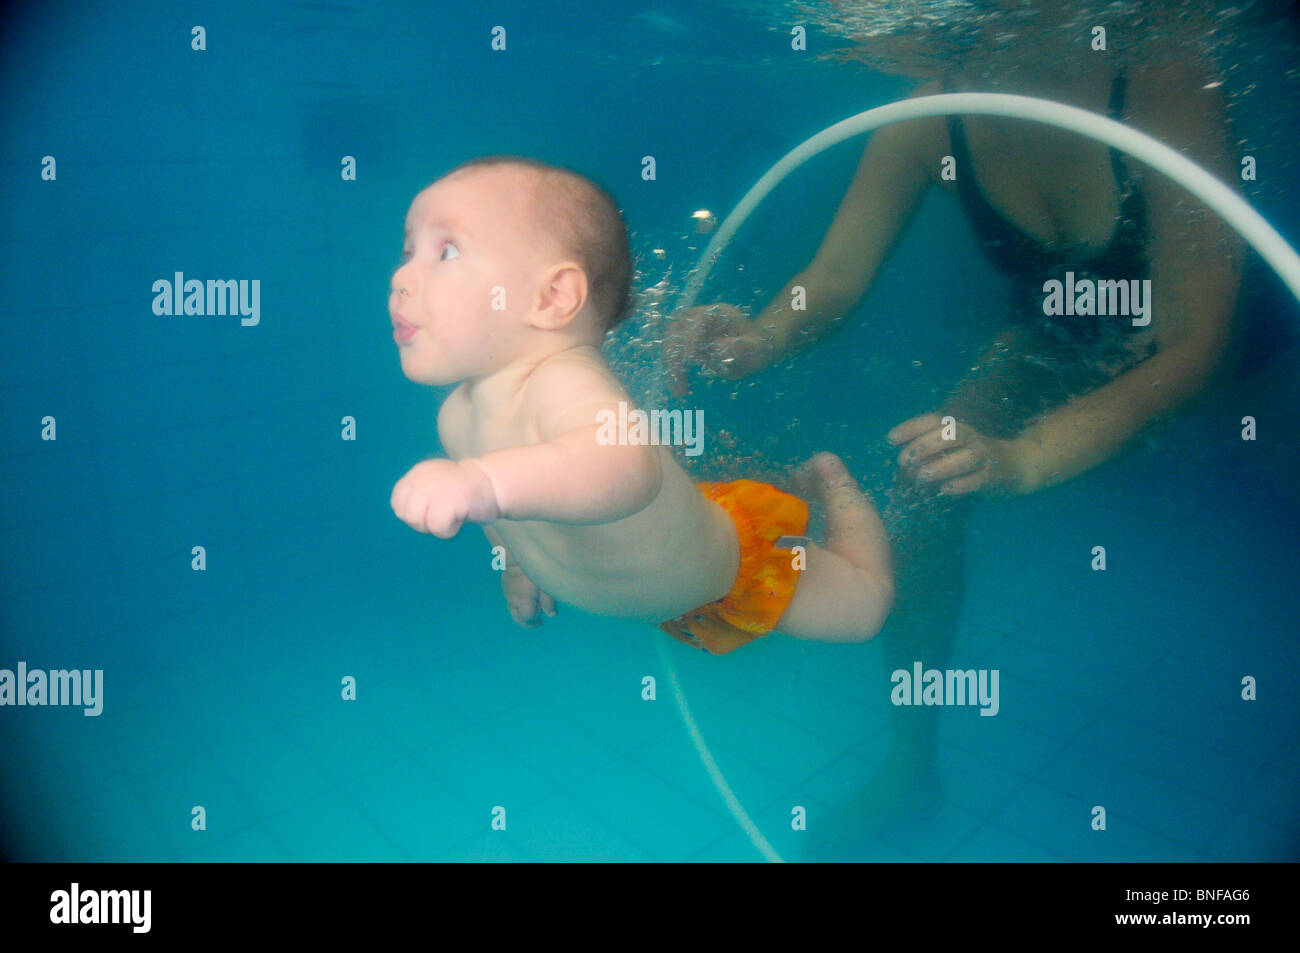 Bébé garçon de 6 mois sous l'eau dans une piscine Photo Stock - Alamy